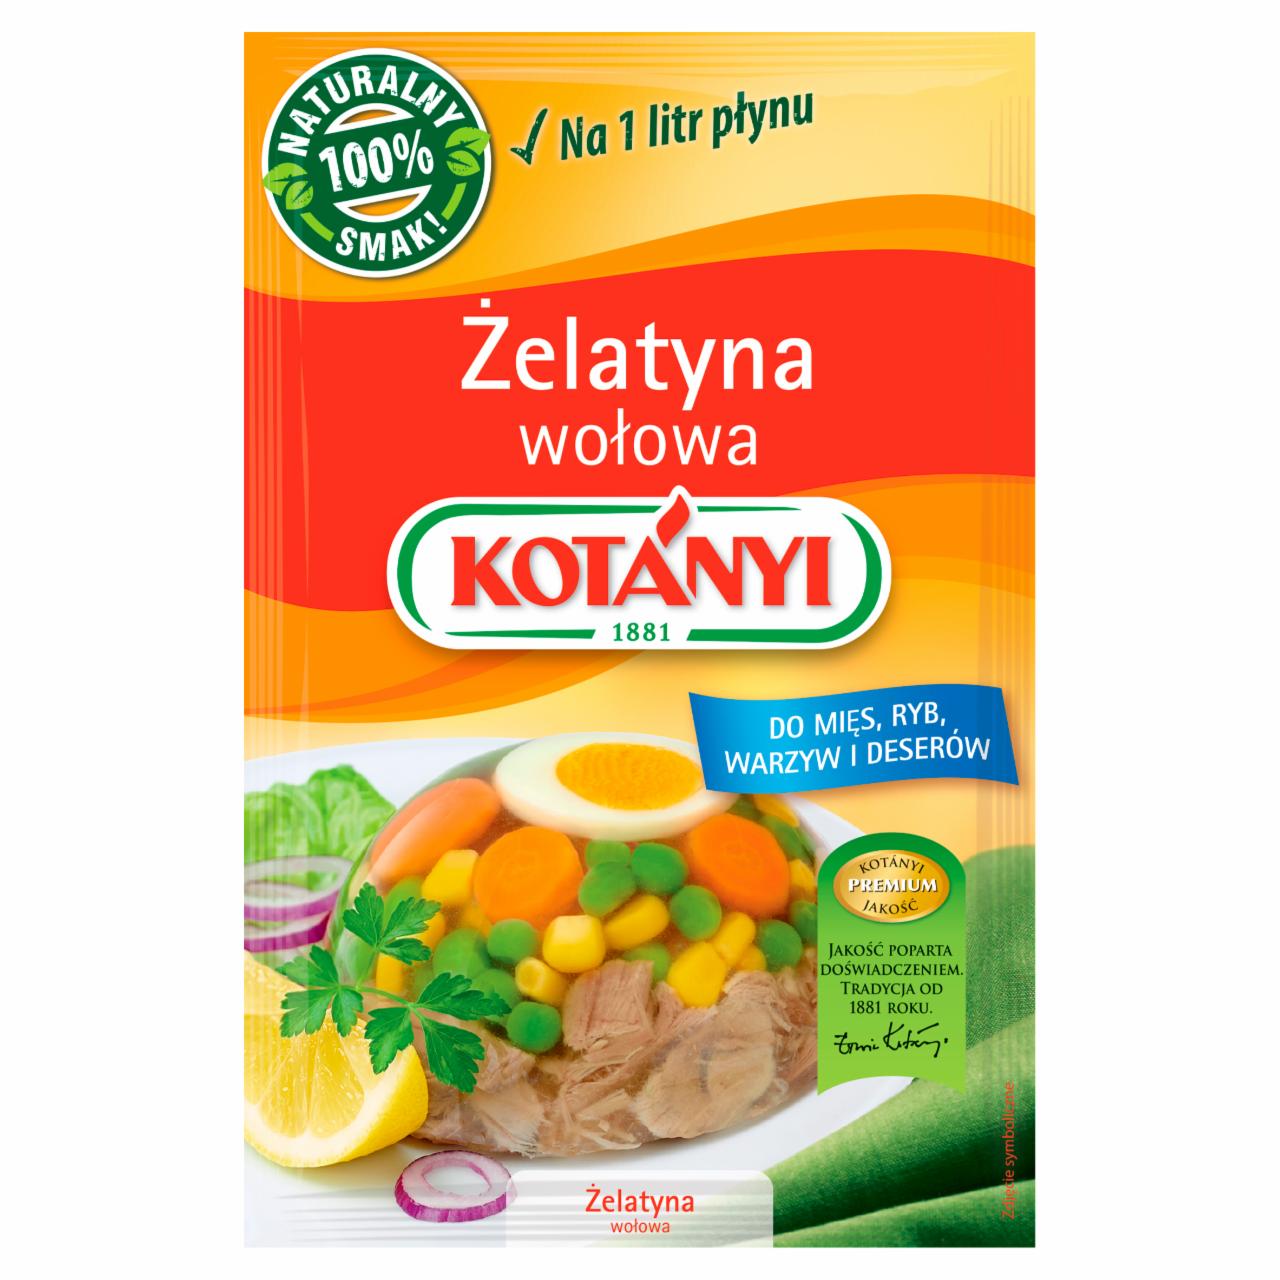 Zdjęcia - Kotányi Żelatyna wołowa 20 g